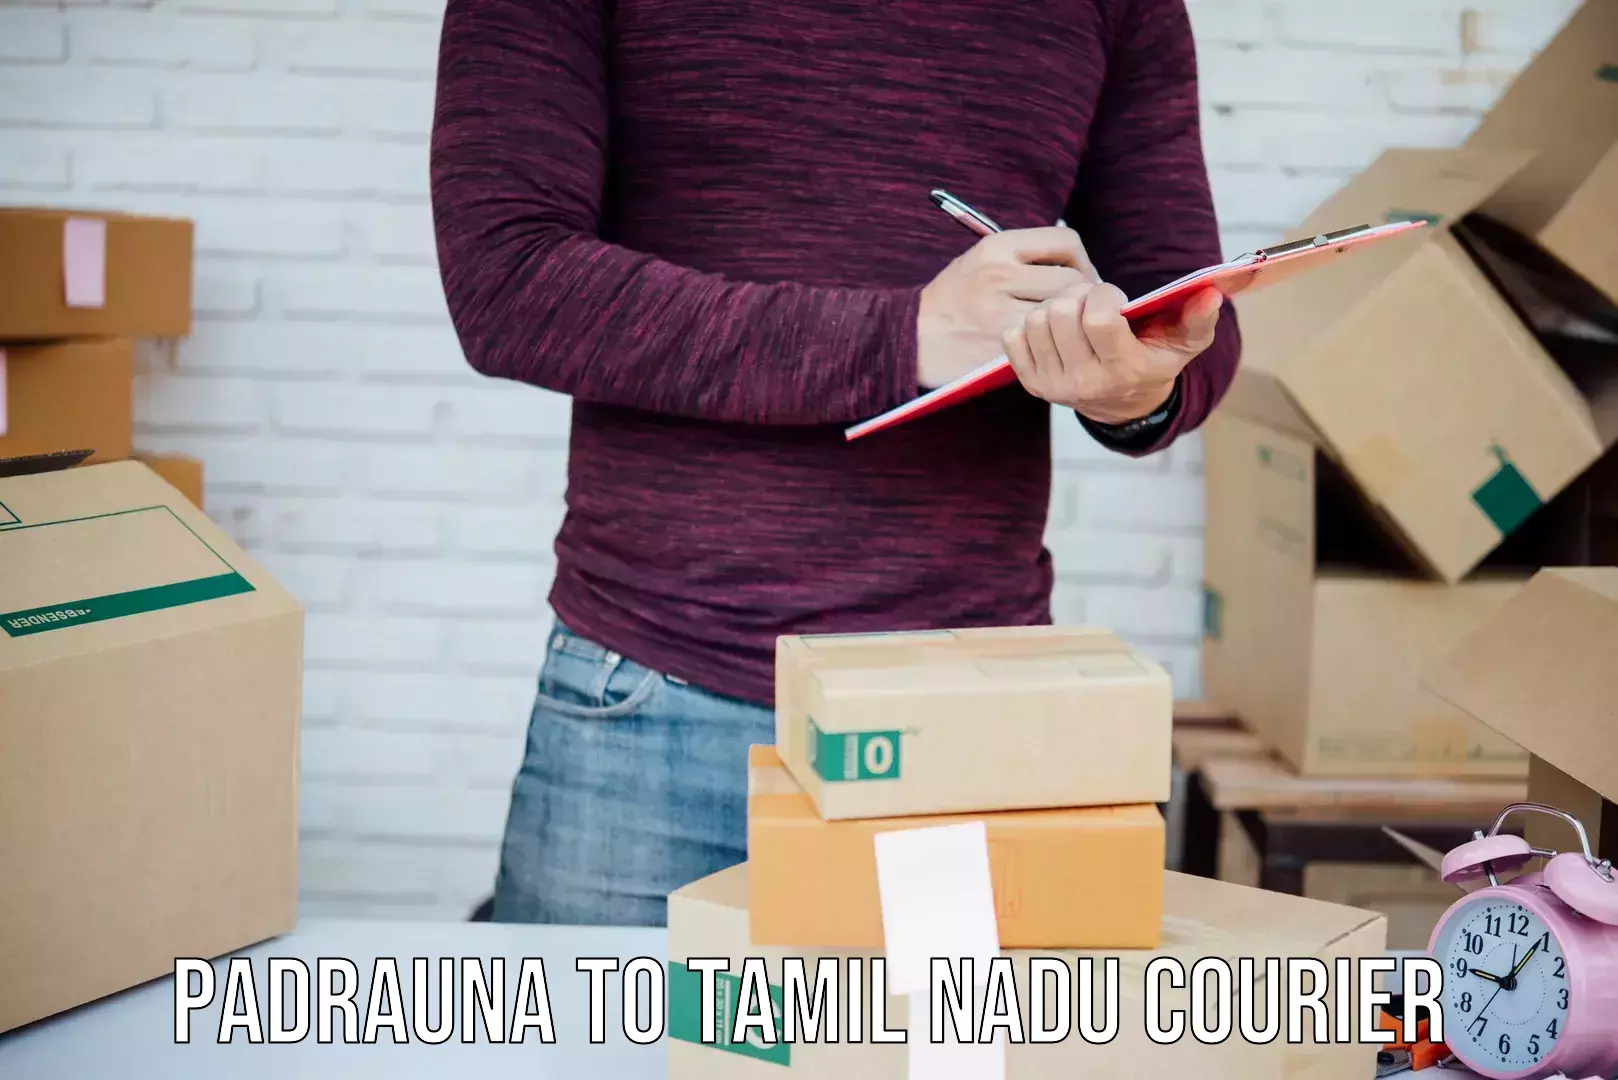 Efficient logistics management Padrauna to Tamil Nadu